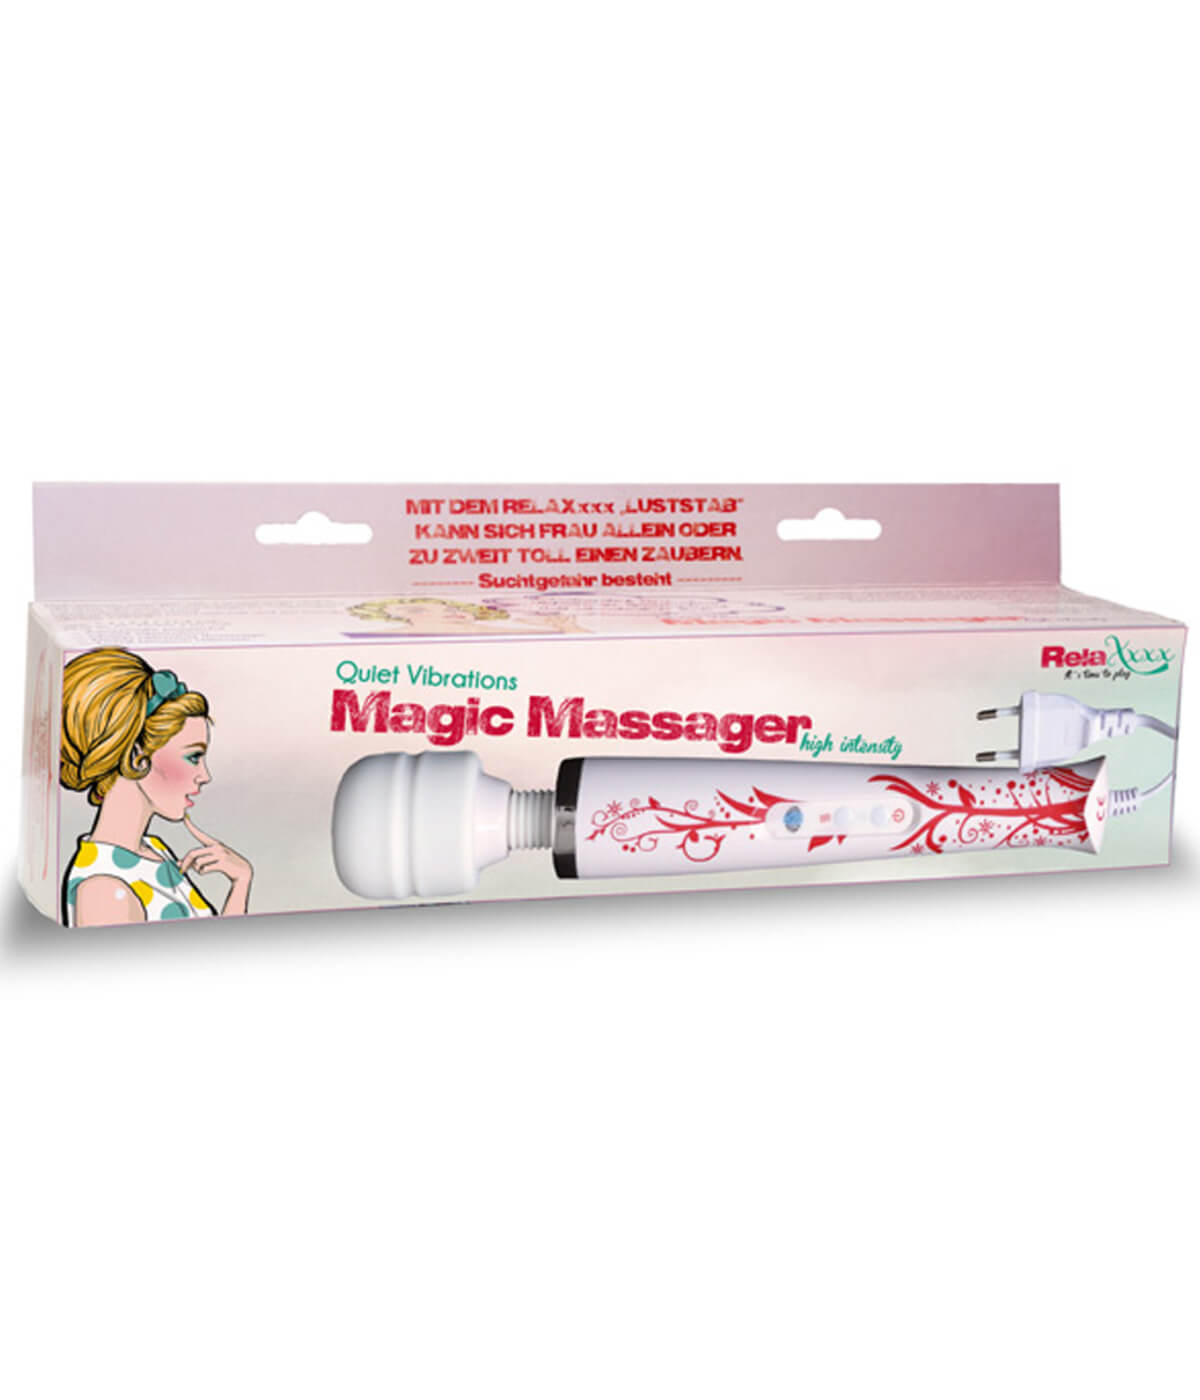 MVW Magic Massager ErosStar.sk